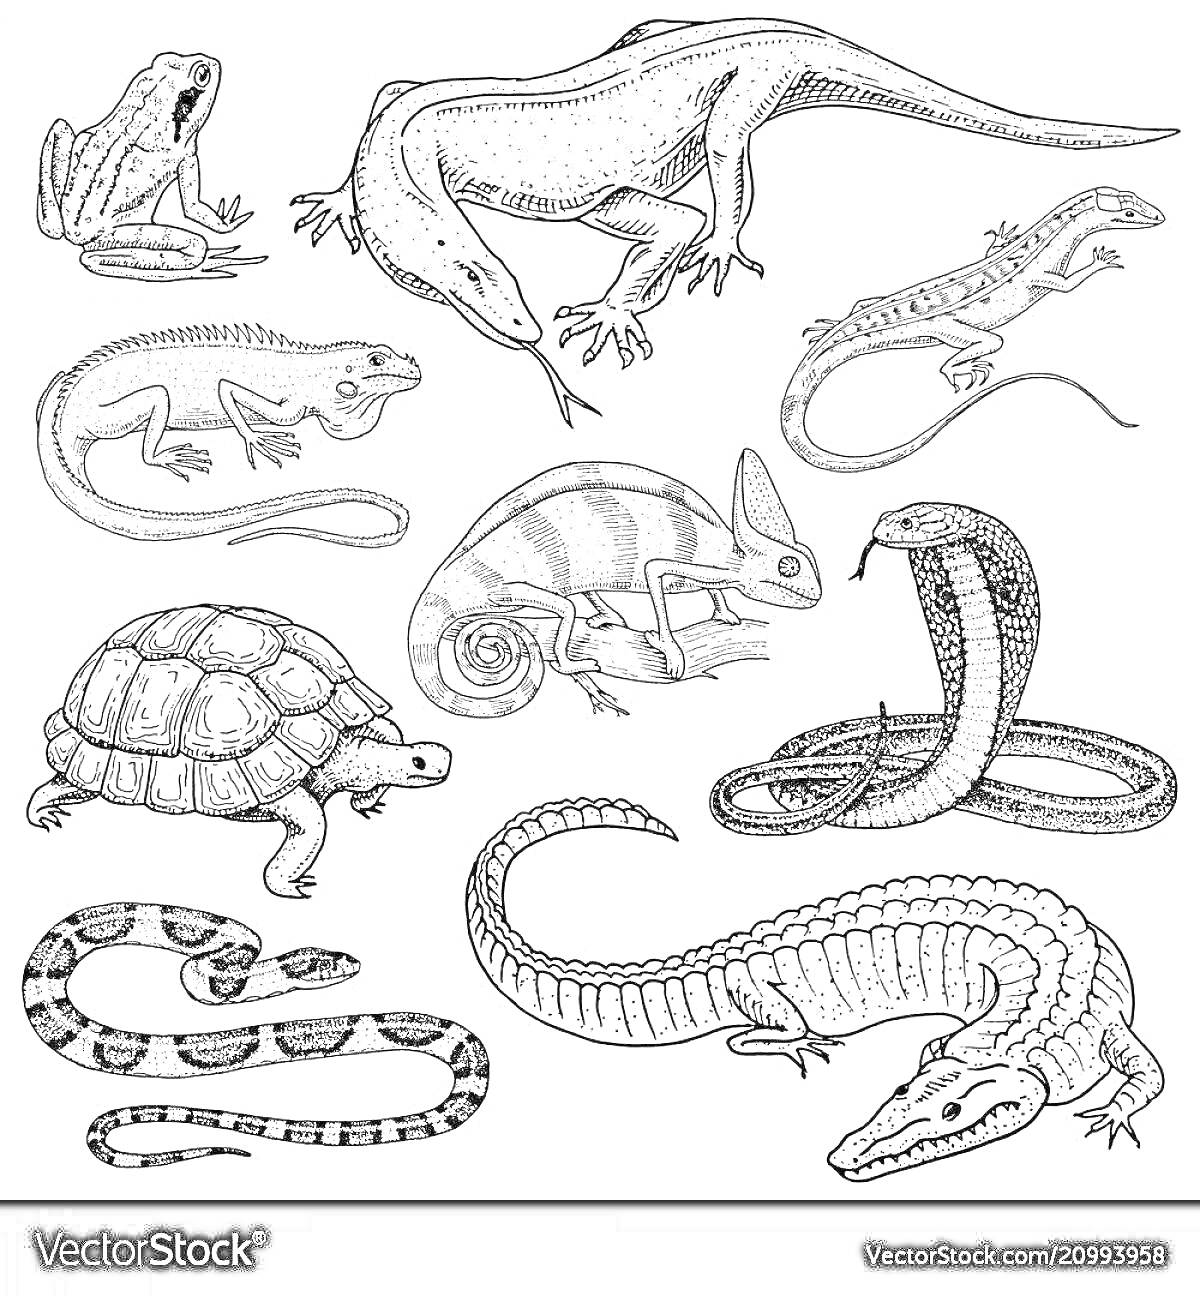 Красящая страница с пресмыкающимися - жабы, ящерицы, черепаха, хамелеон, кобра, змеи и крокодил